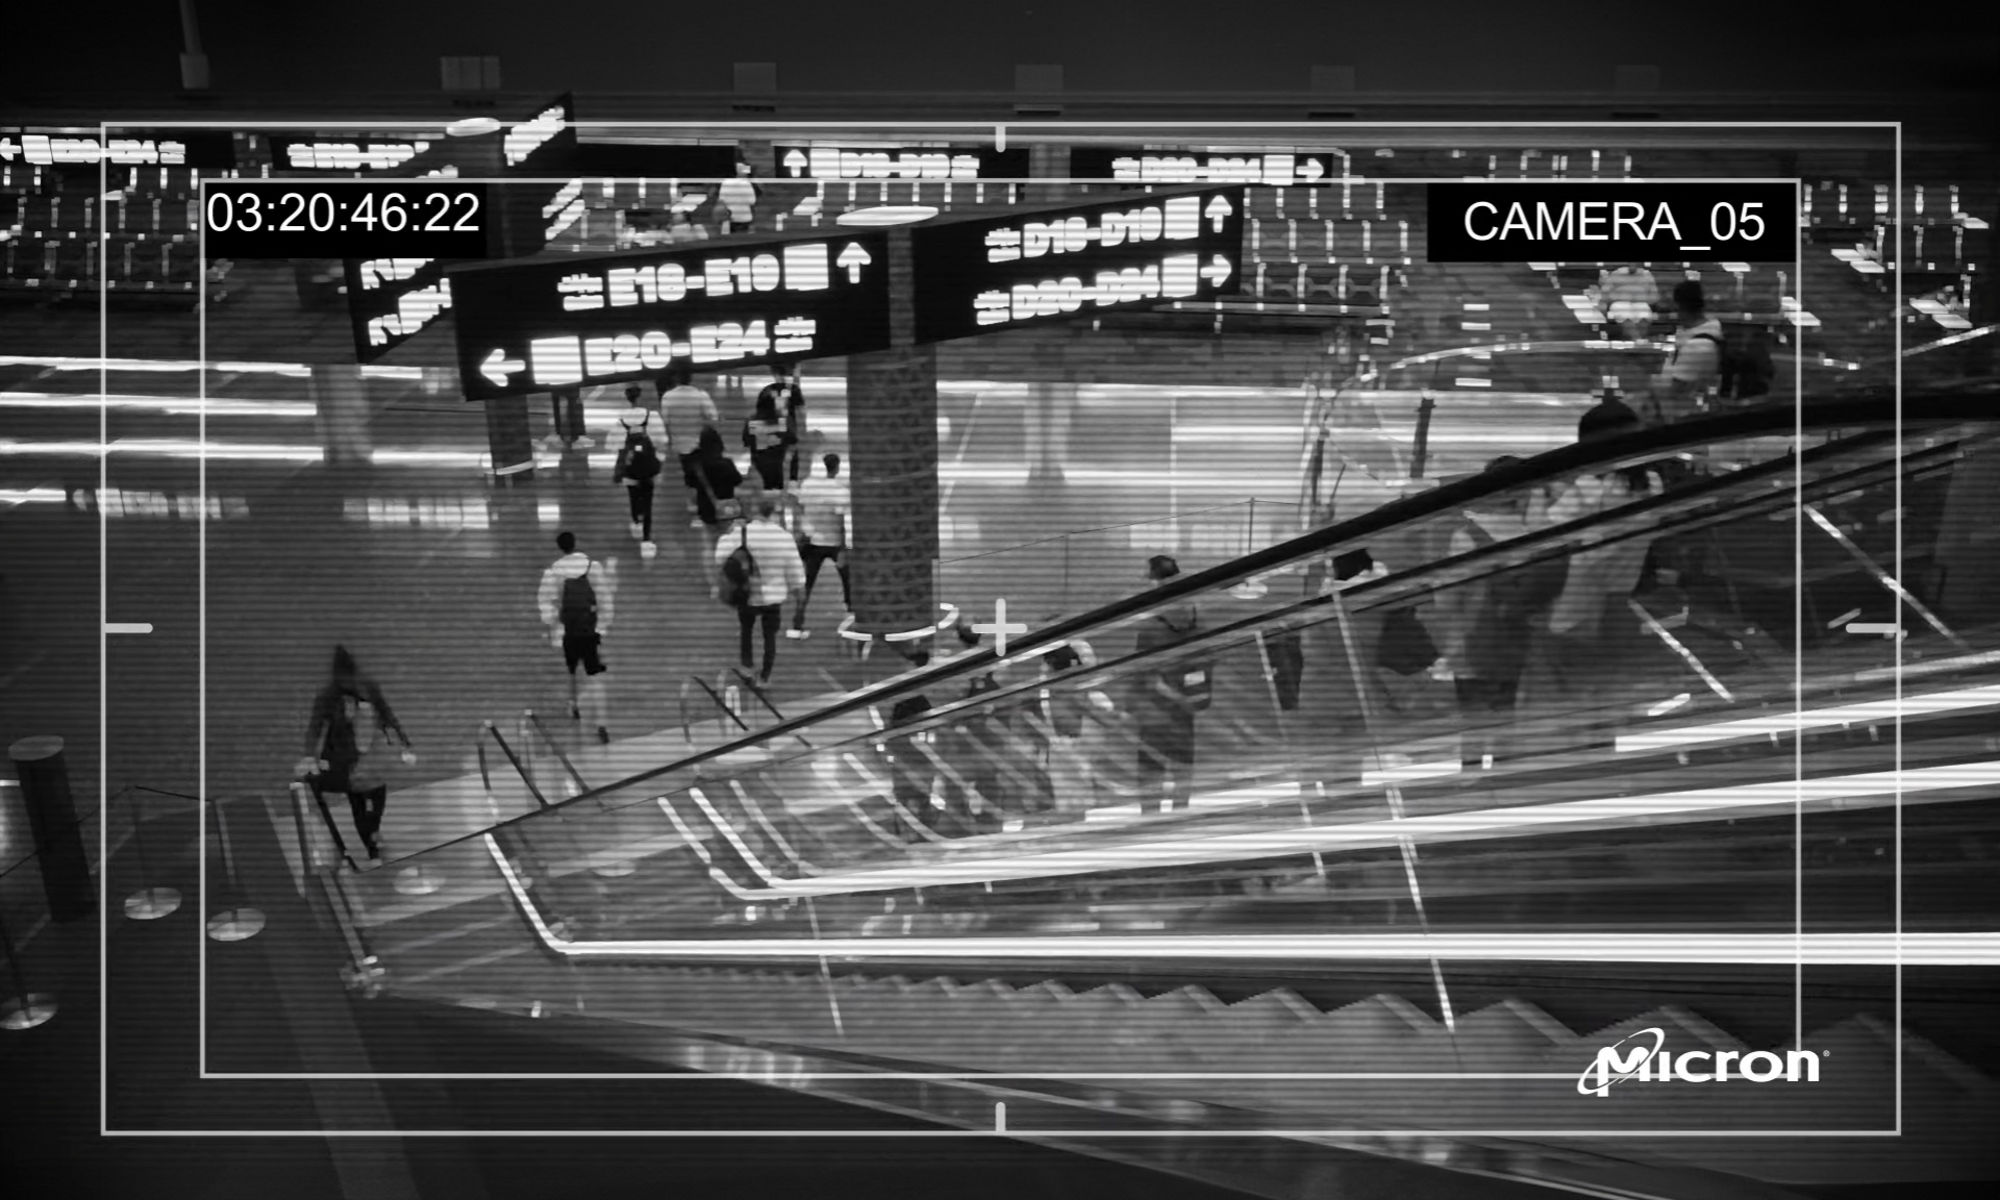 商场自动扶梯黑白安防摄像头图像 